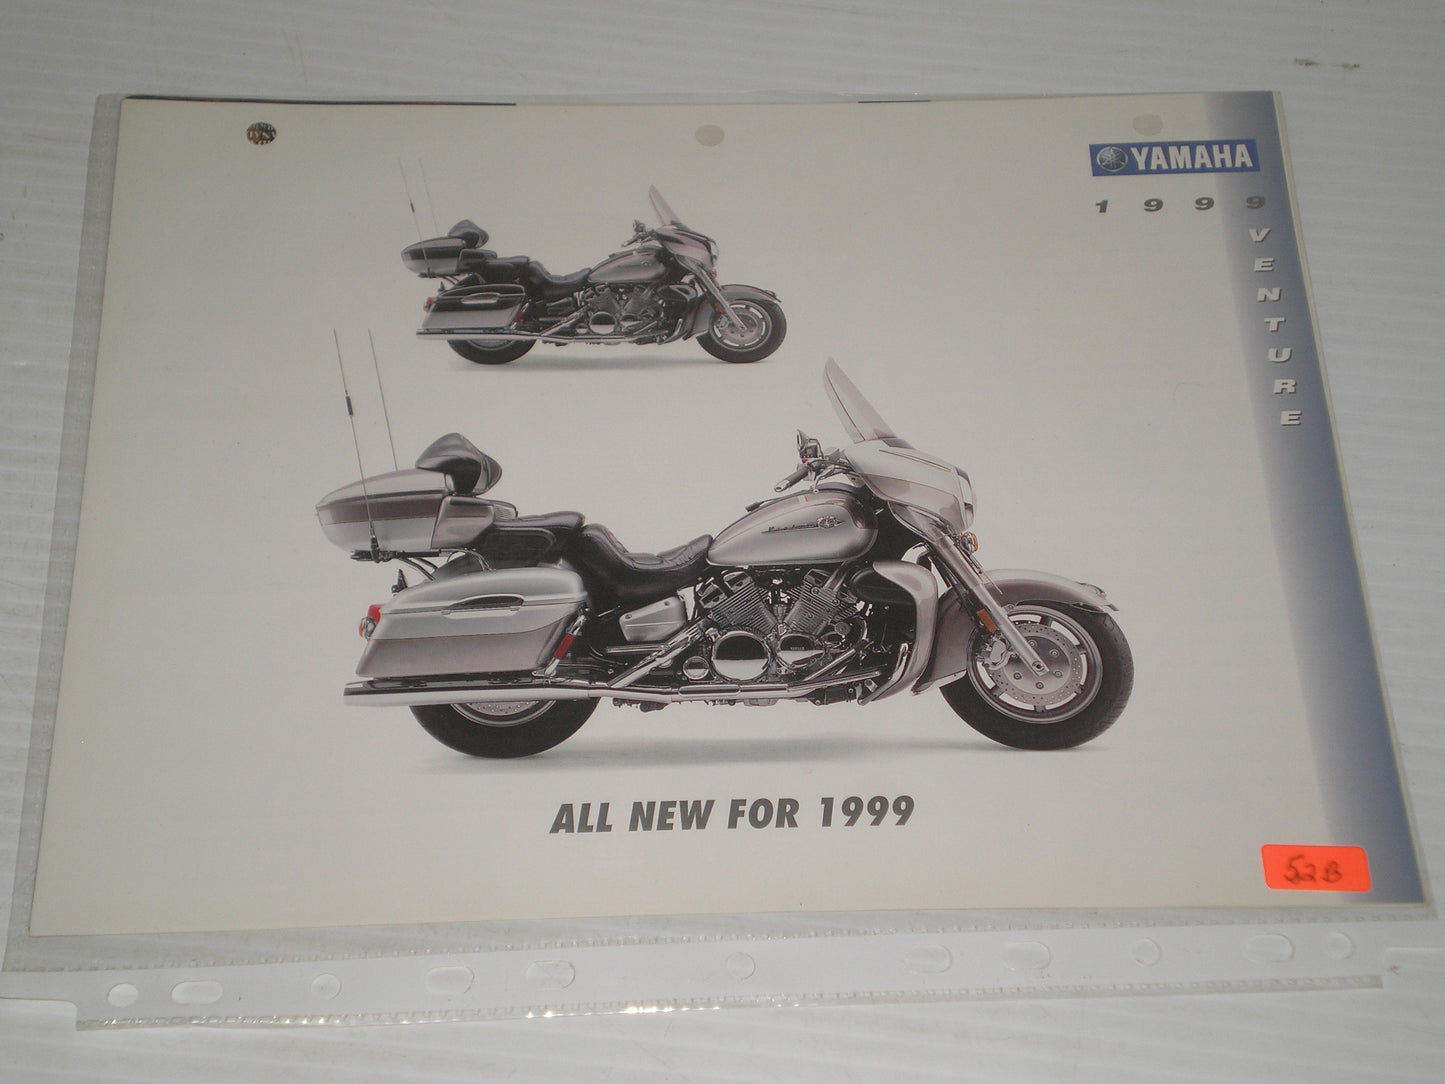 YRMAHA 1999  STAR VENTURE MOTORCYCLE SAL BROCHURE 52B